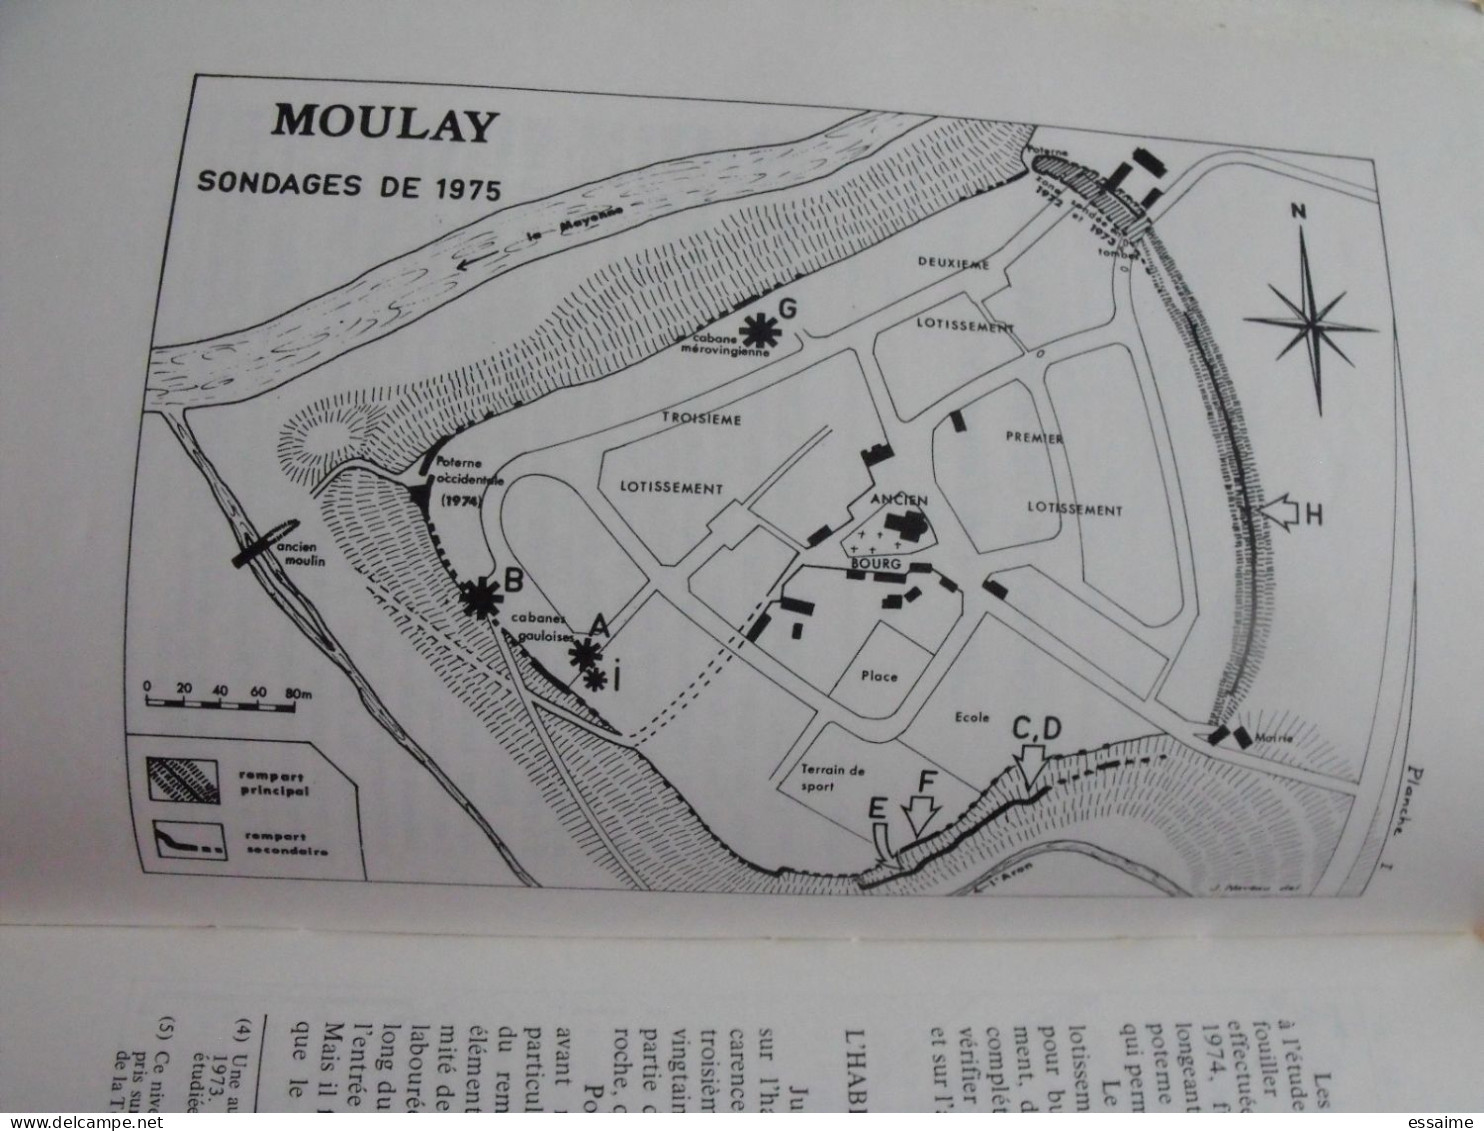 bulletin historique et archéologique de la Mayenne. 1975-76, n° 41-42 (246-4) . Laval Chateau-Gontier. Goupil.